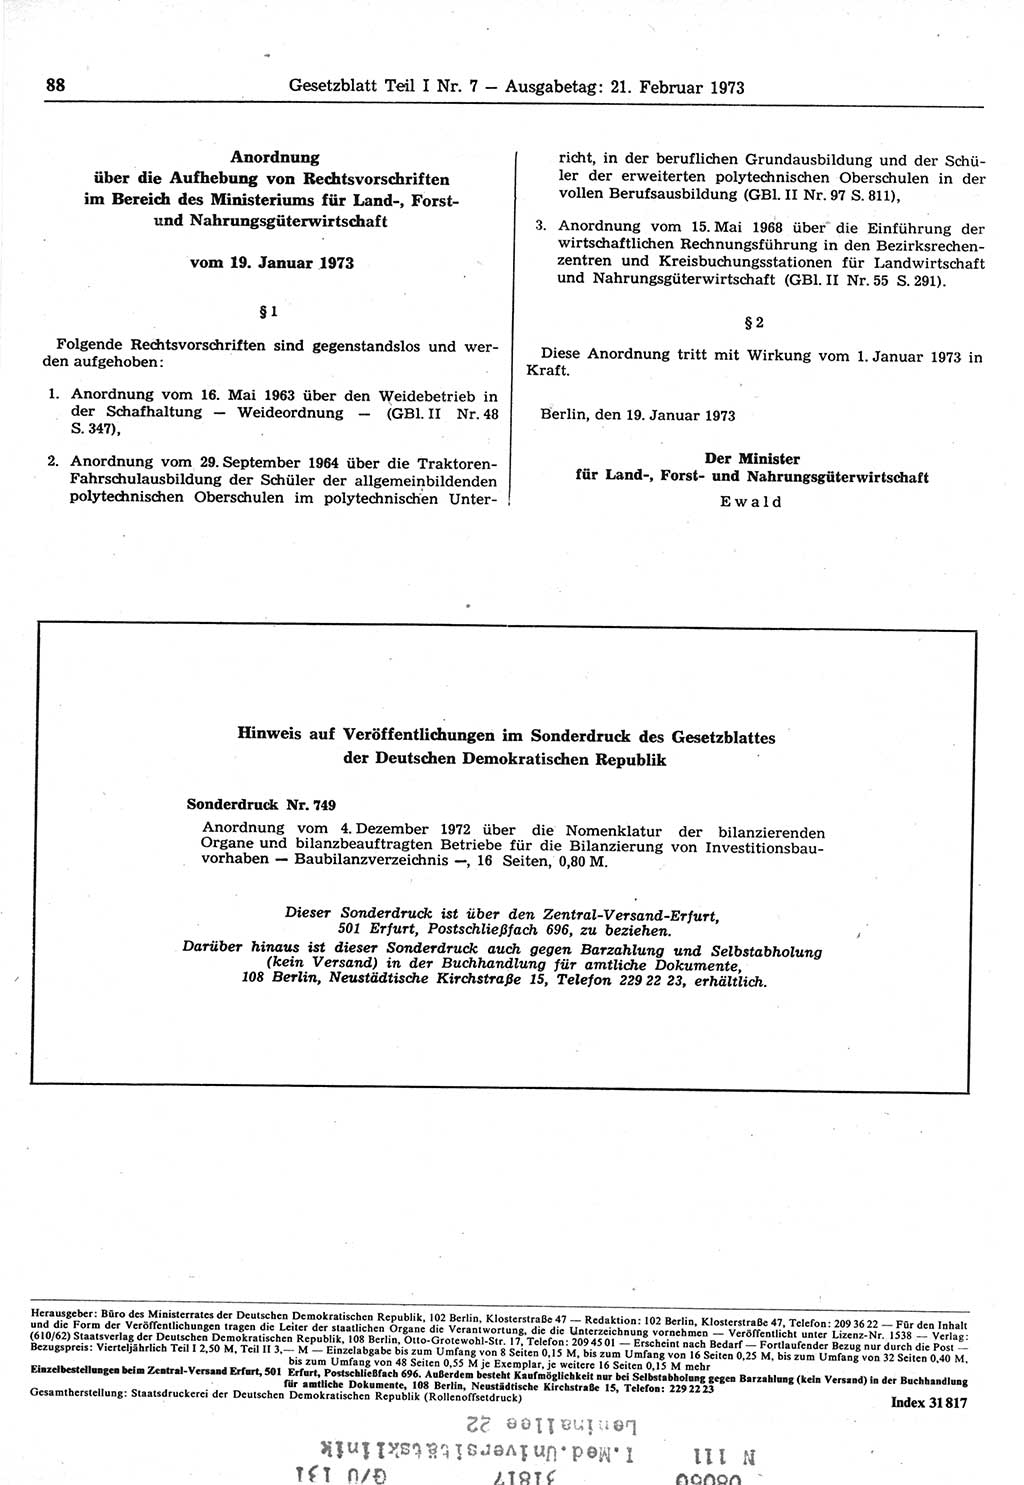 Gesetzblatt (GBl.) der Deutschen Demokratischen Republik (DDR) Teil Ⅰ 1973, Seite 88 (GBl. DDR Ⅰ 1973, S. 88)